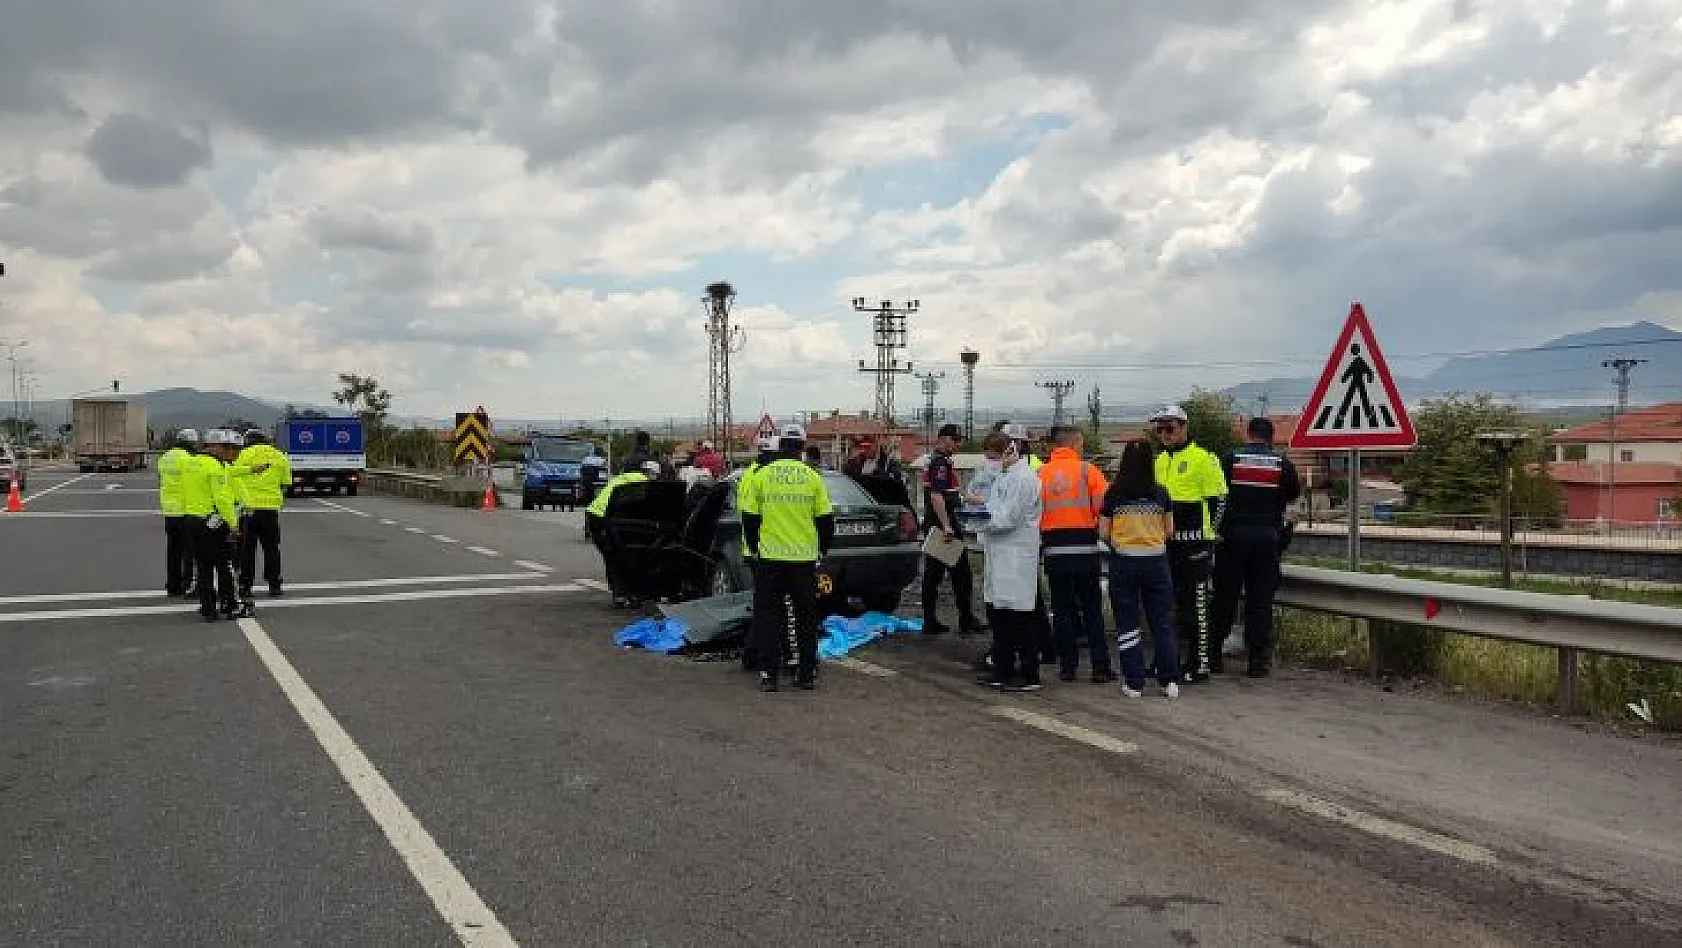 İncesu'da trafik kazası: 4 ölü, 1 ağır yaralı